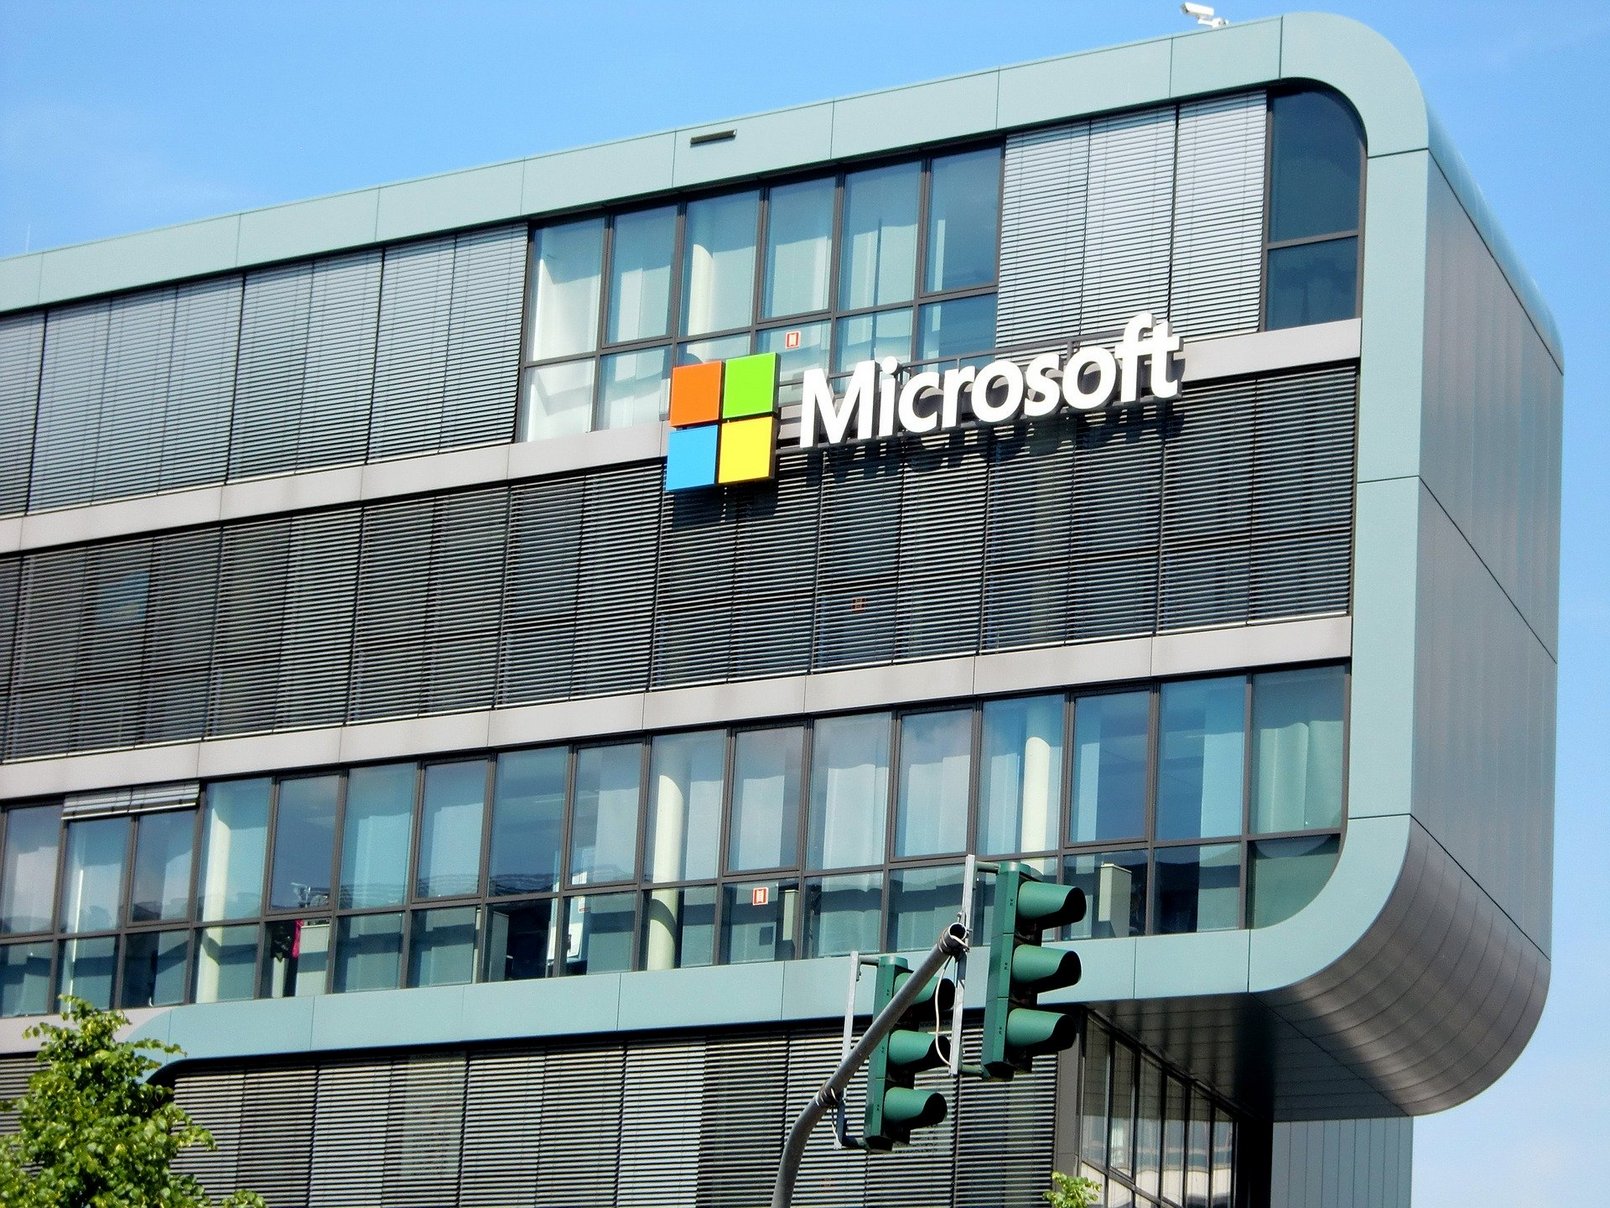 Microsoft est la première grande entreprise de la tech à se fixer de tels objectifs environnementaux. © Efes Kitap, Pixabay